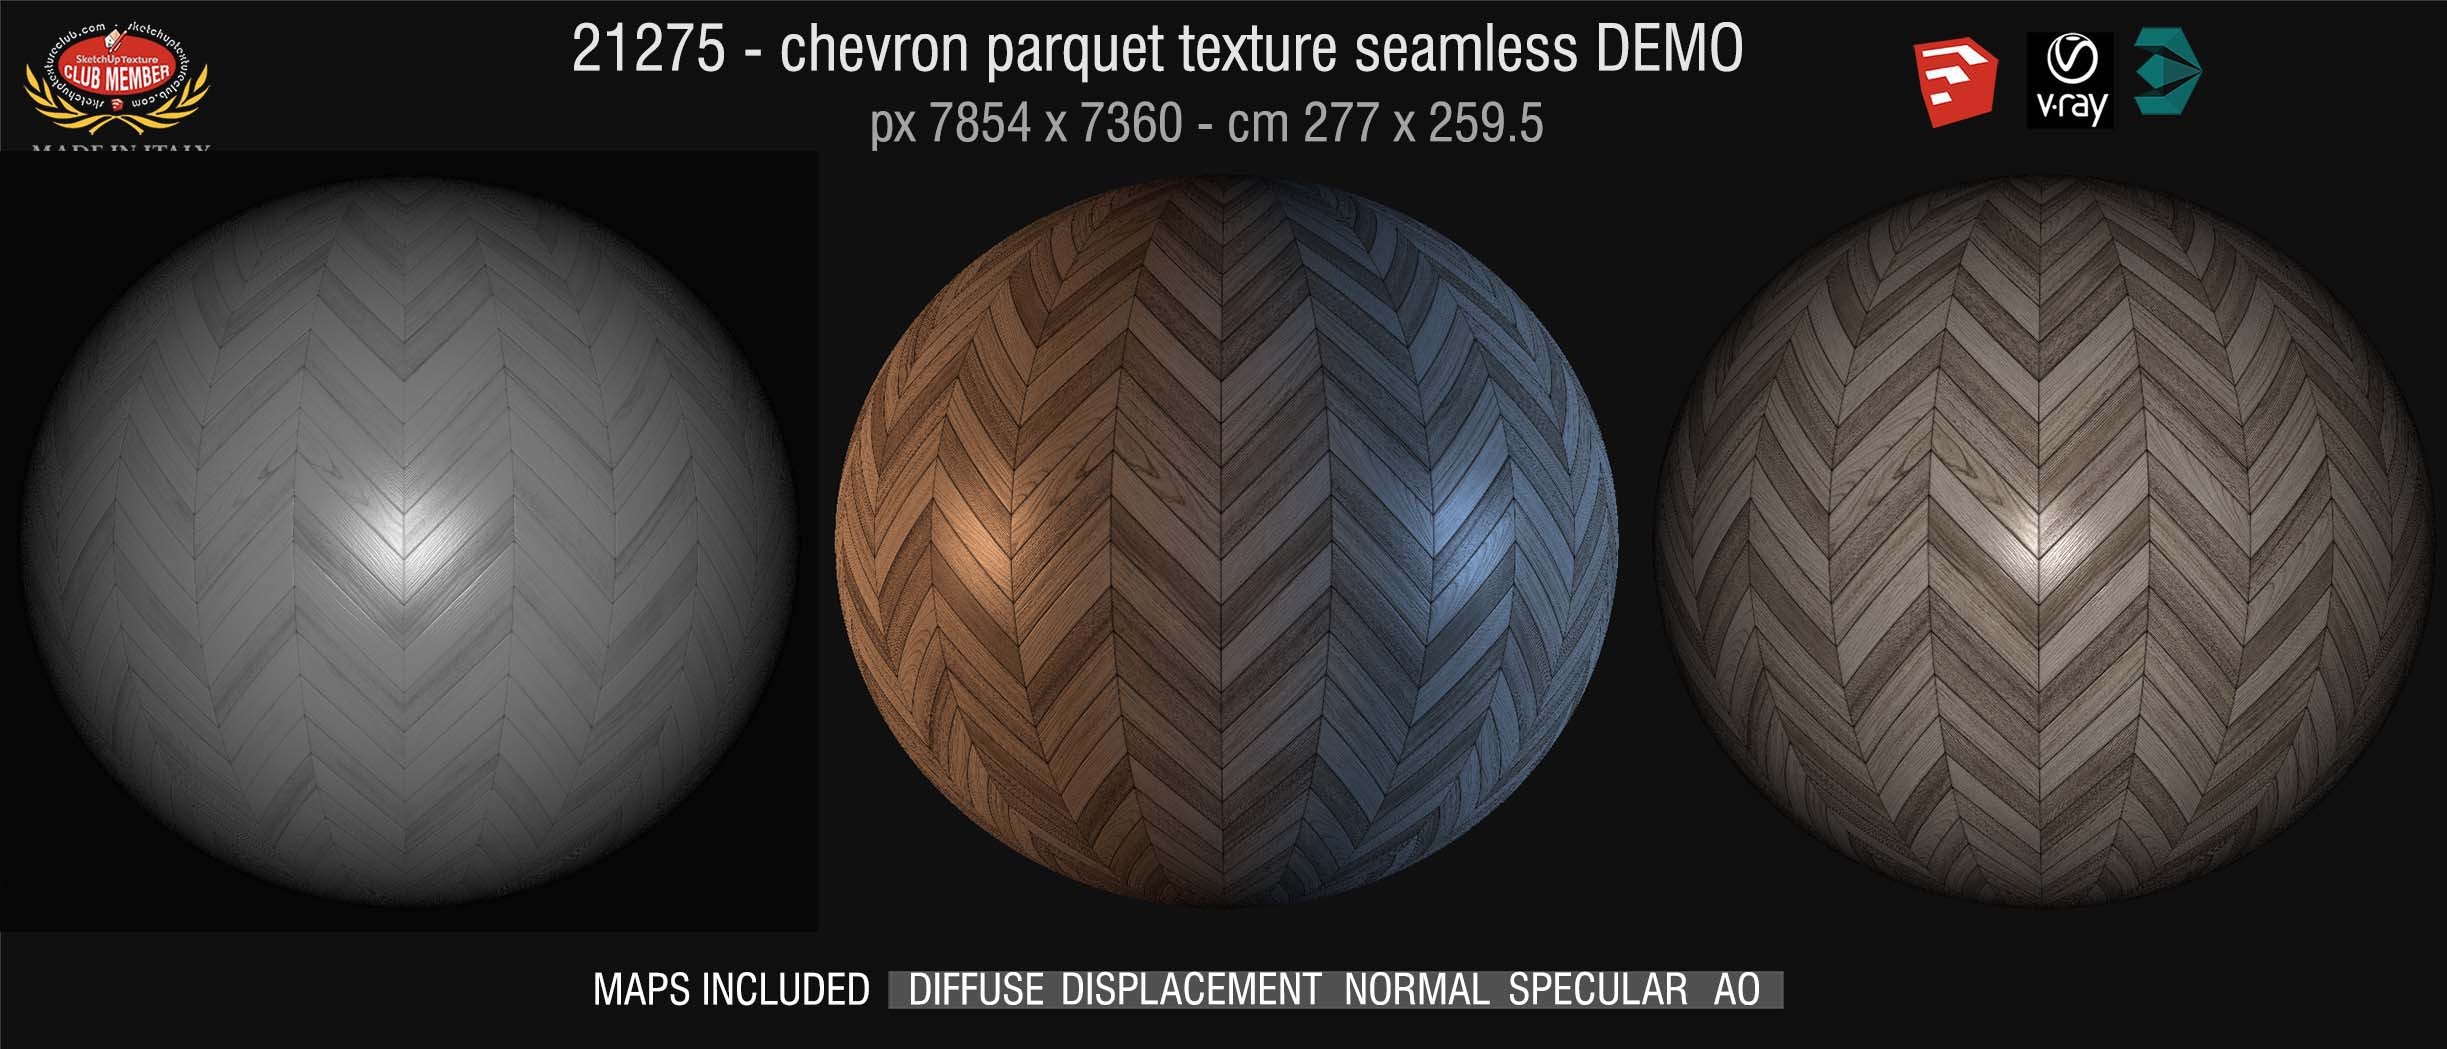 21275 HR  Chevron parquet texture + maps DEMO